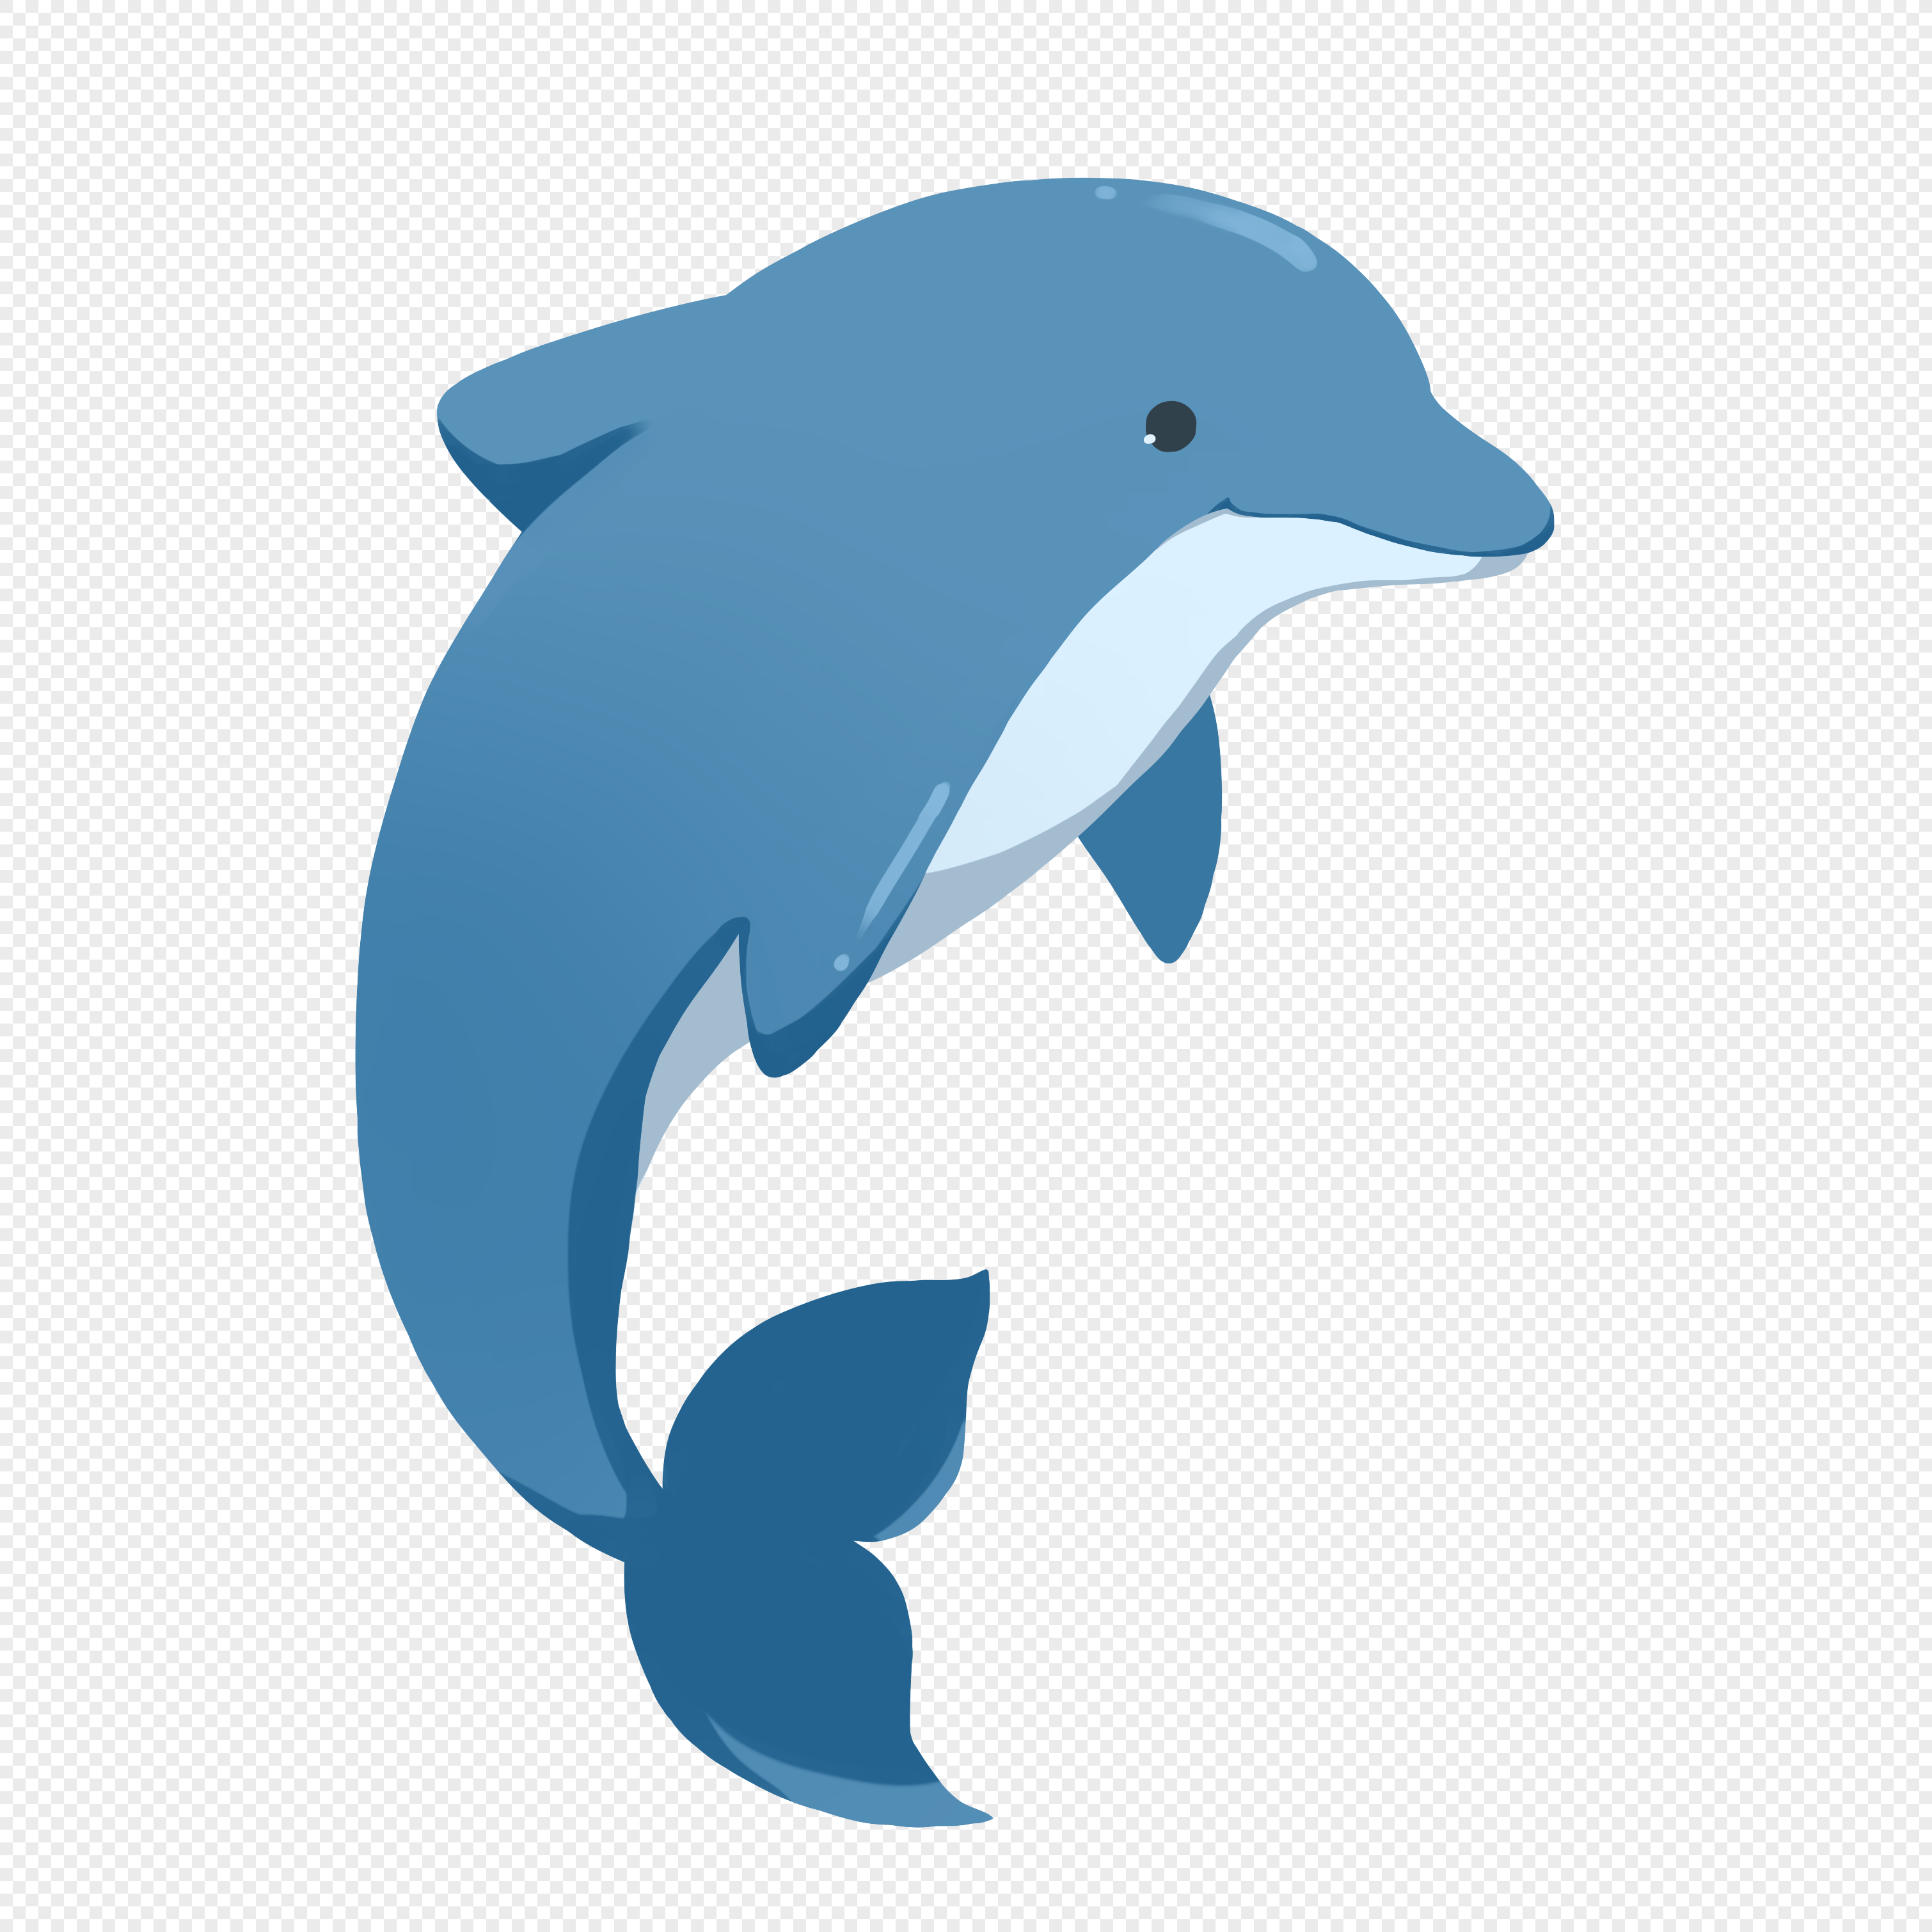 手绘拟人卡通动物形象海豚图片素材-PPT家园